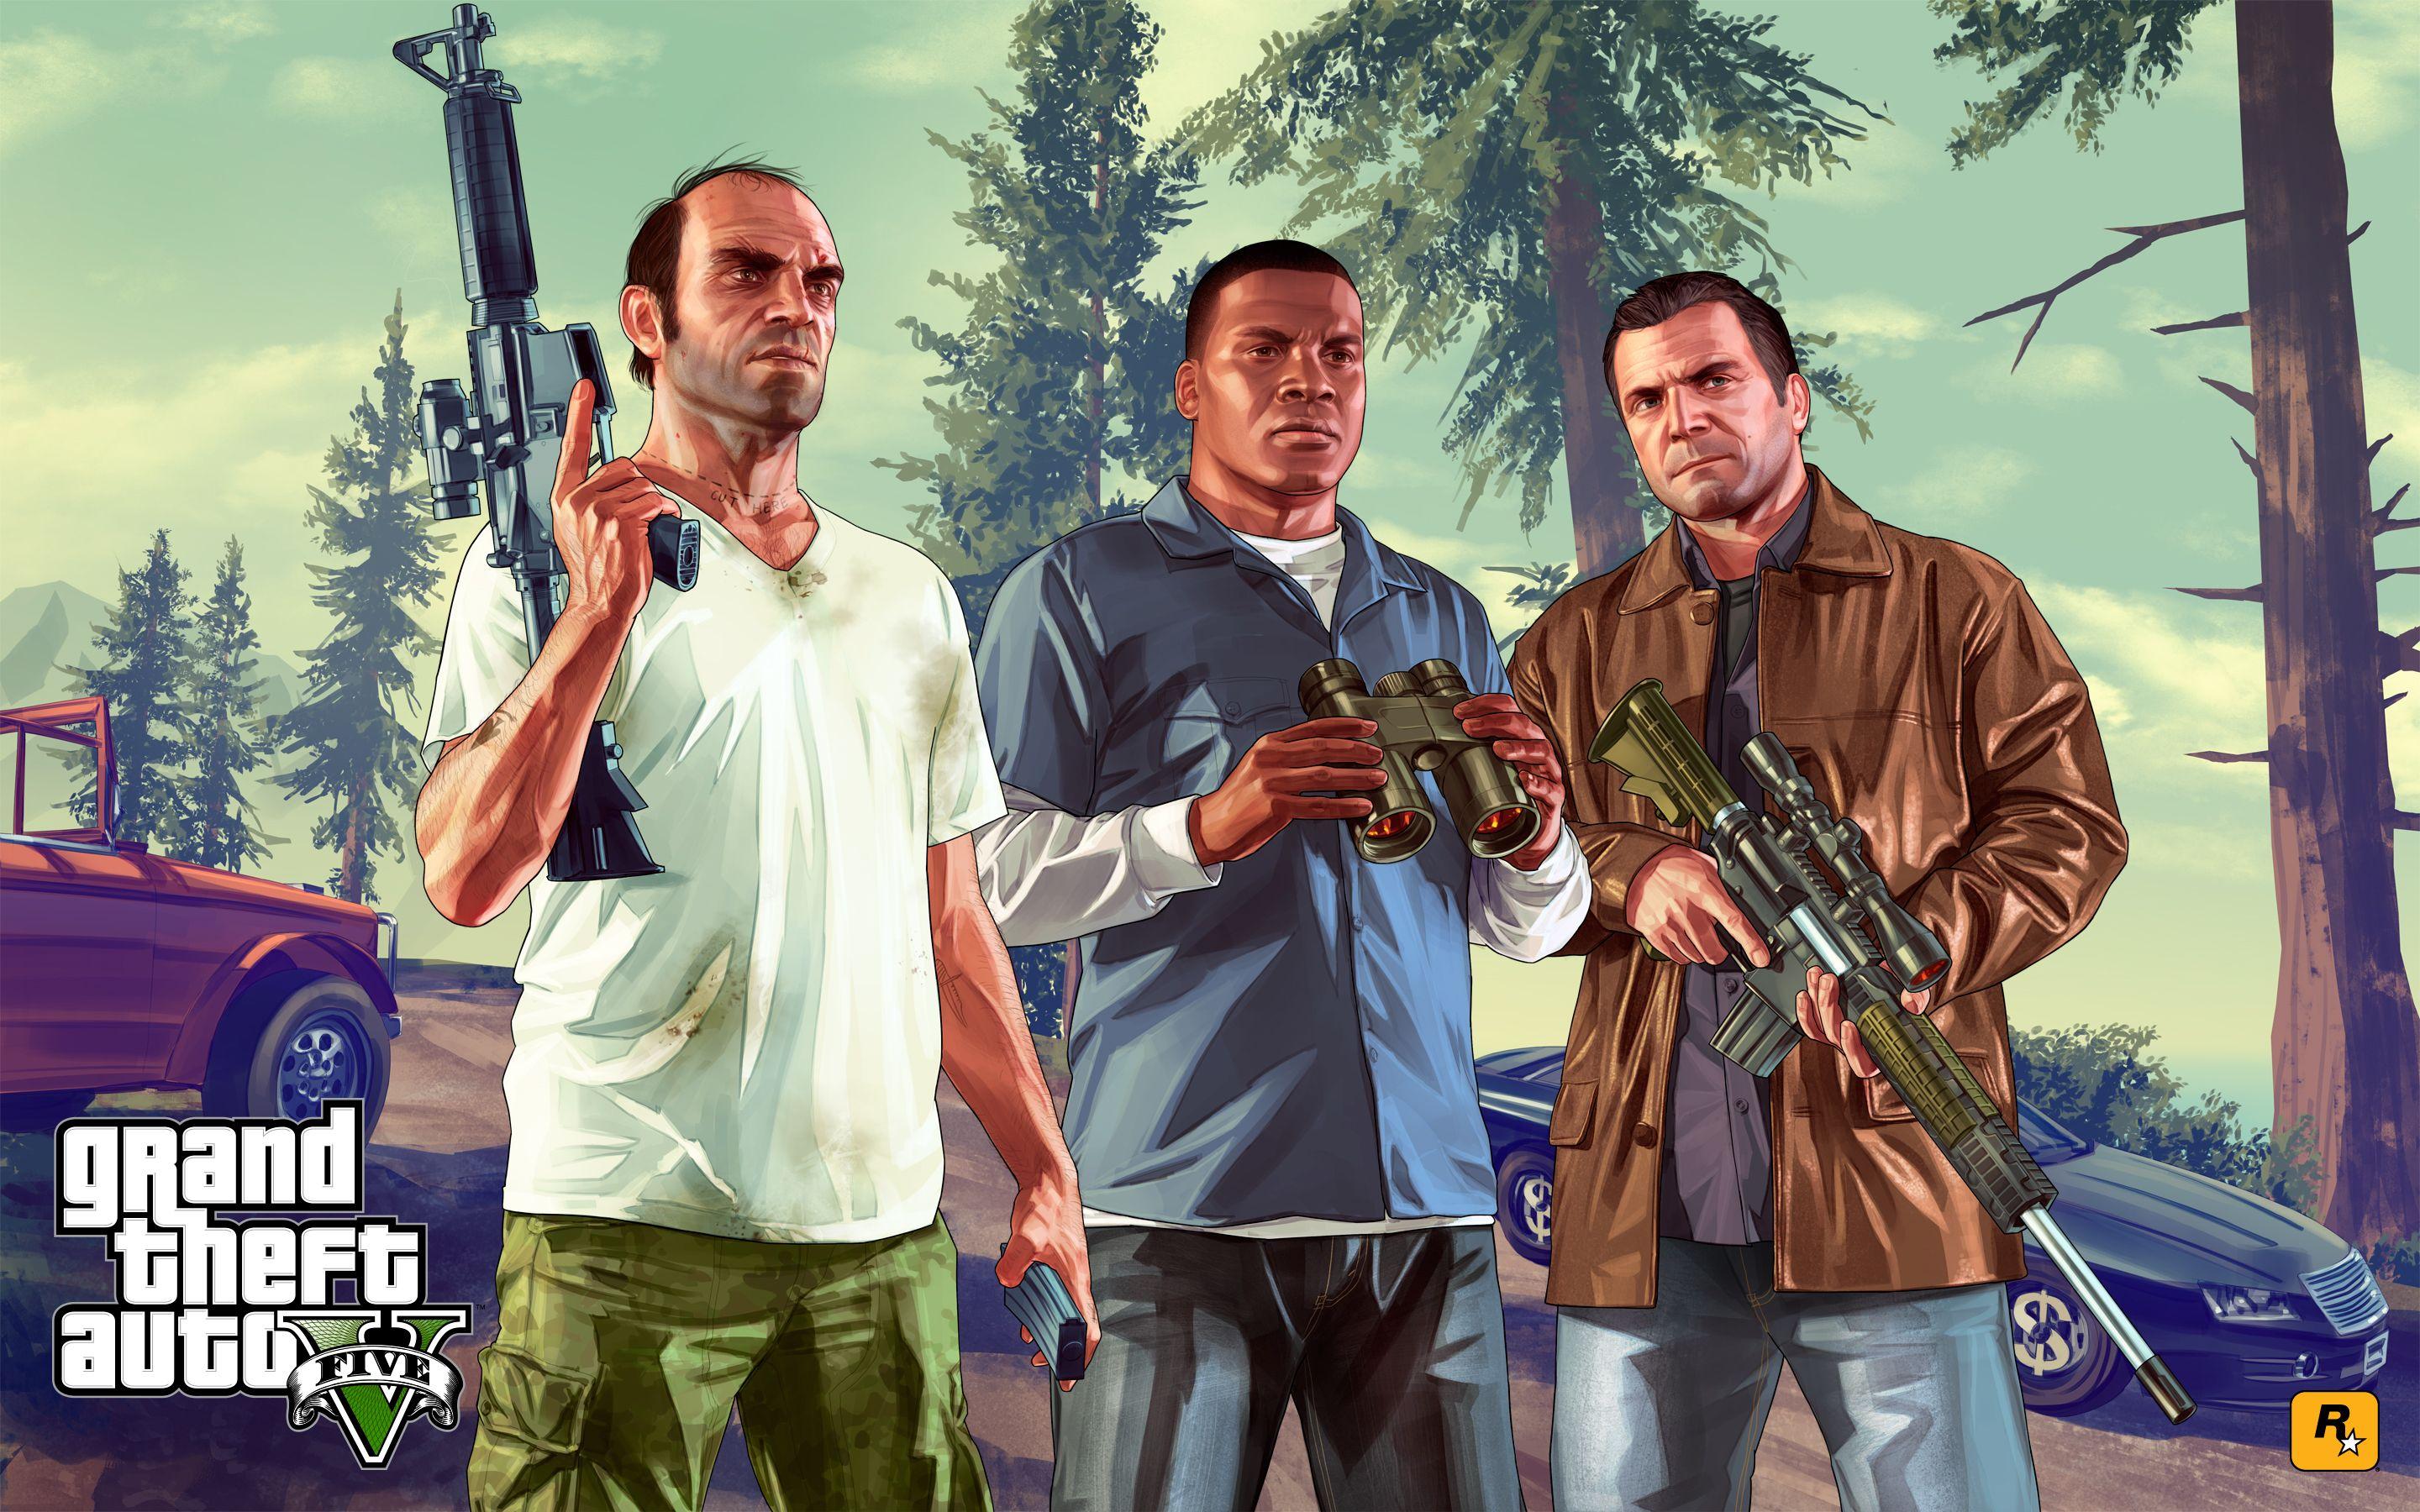 Hình Nền GTA 5 4K sẽ khiến bạn không thể rời mắt khỏi màn hình. Hãy thưởng thức những hình ảnh tuyệt đẹp và đầy cuốn hút nhất của thế giới Grand Theft Auto 5.